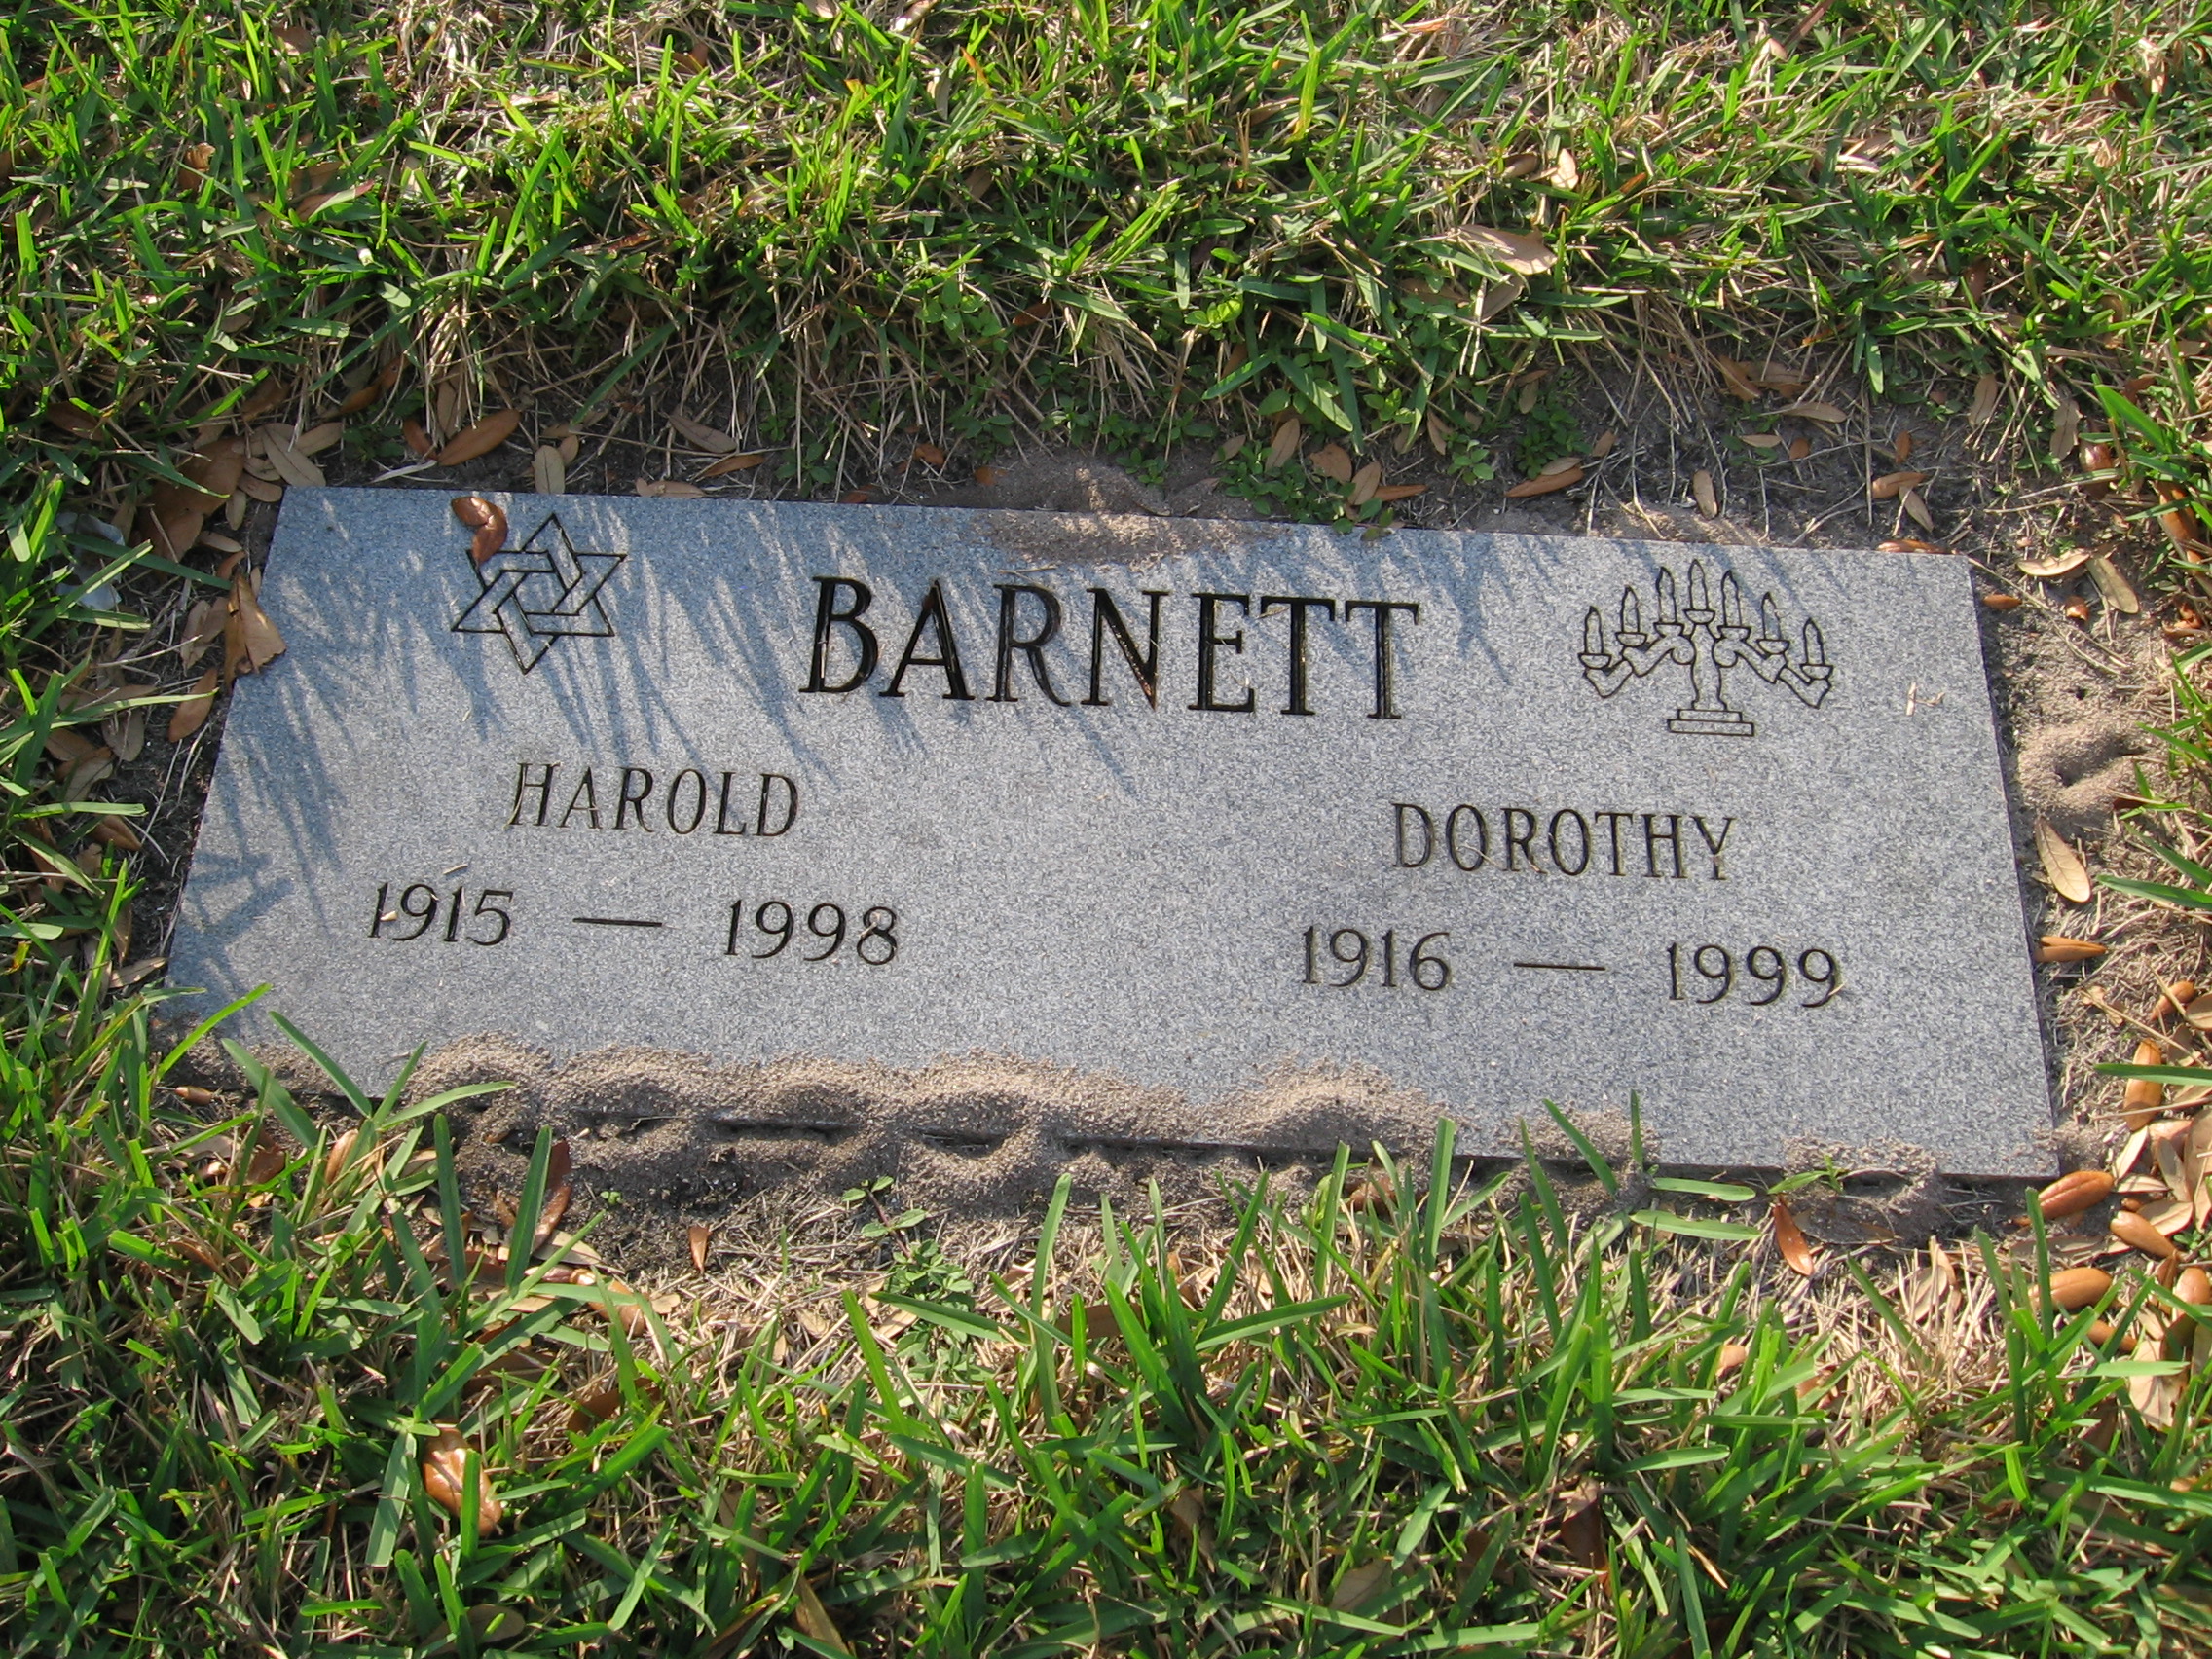 Harold Barnett